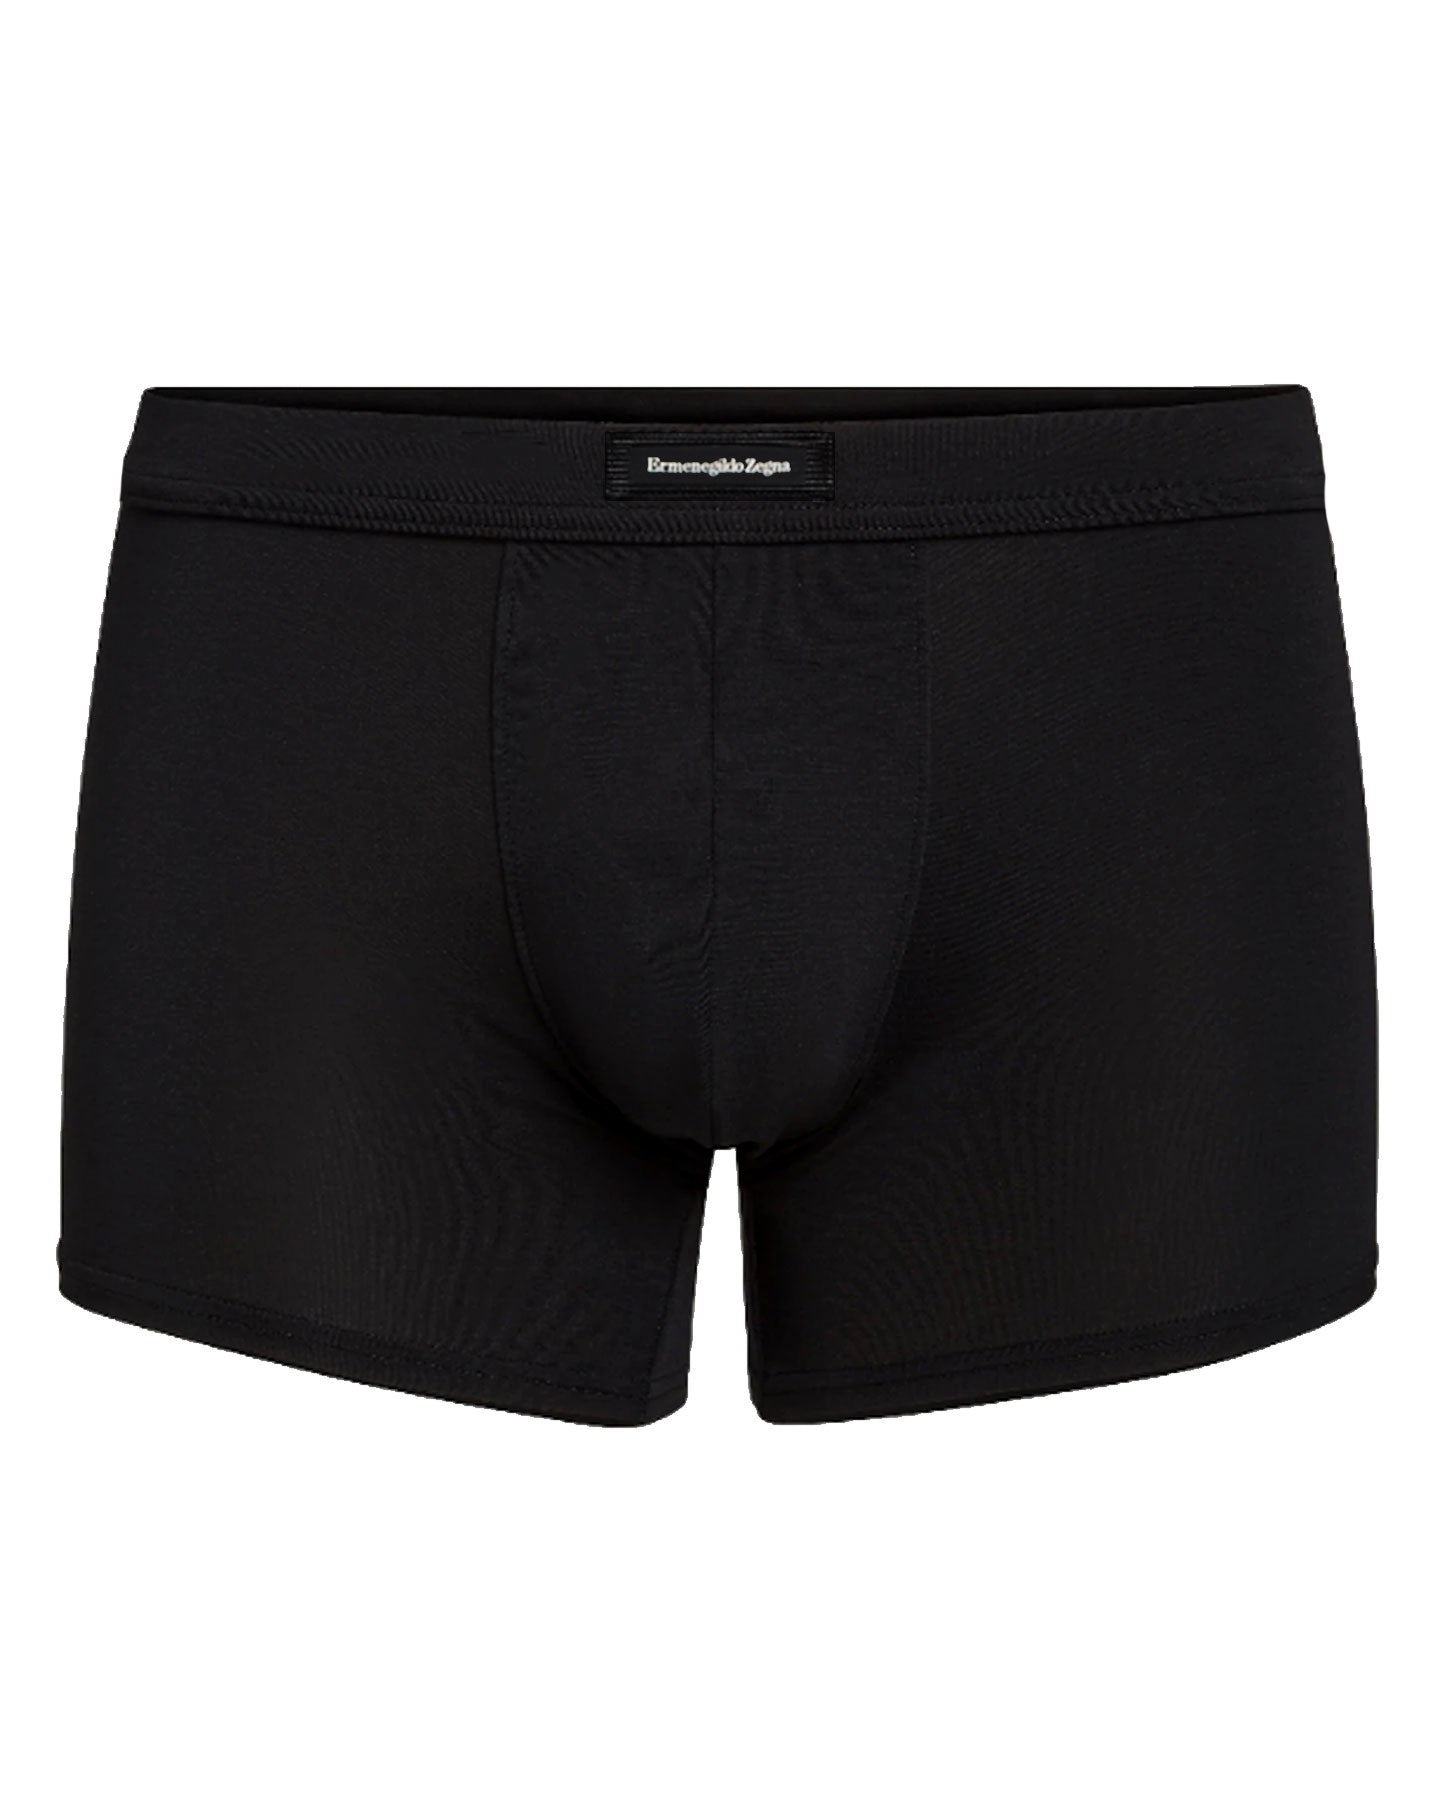 Ermenegildo Zegna Boxer Brief Black Men Underwear MicroModal XXL